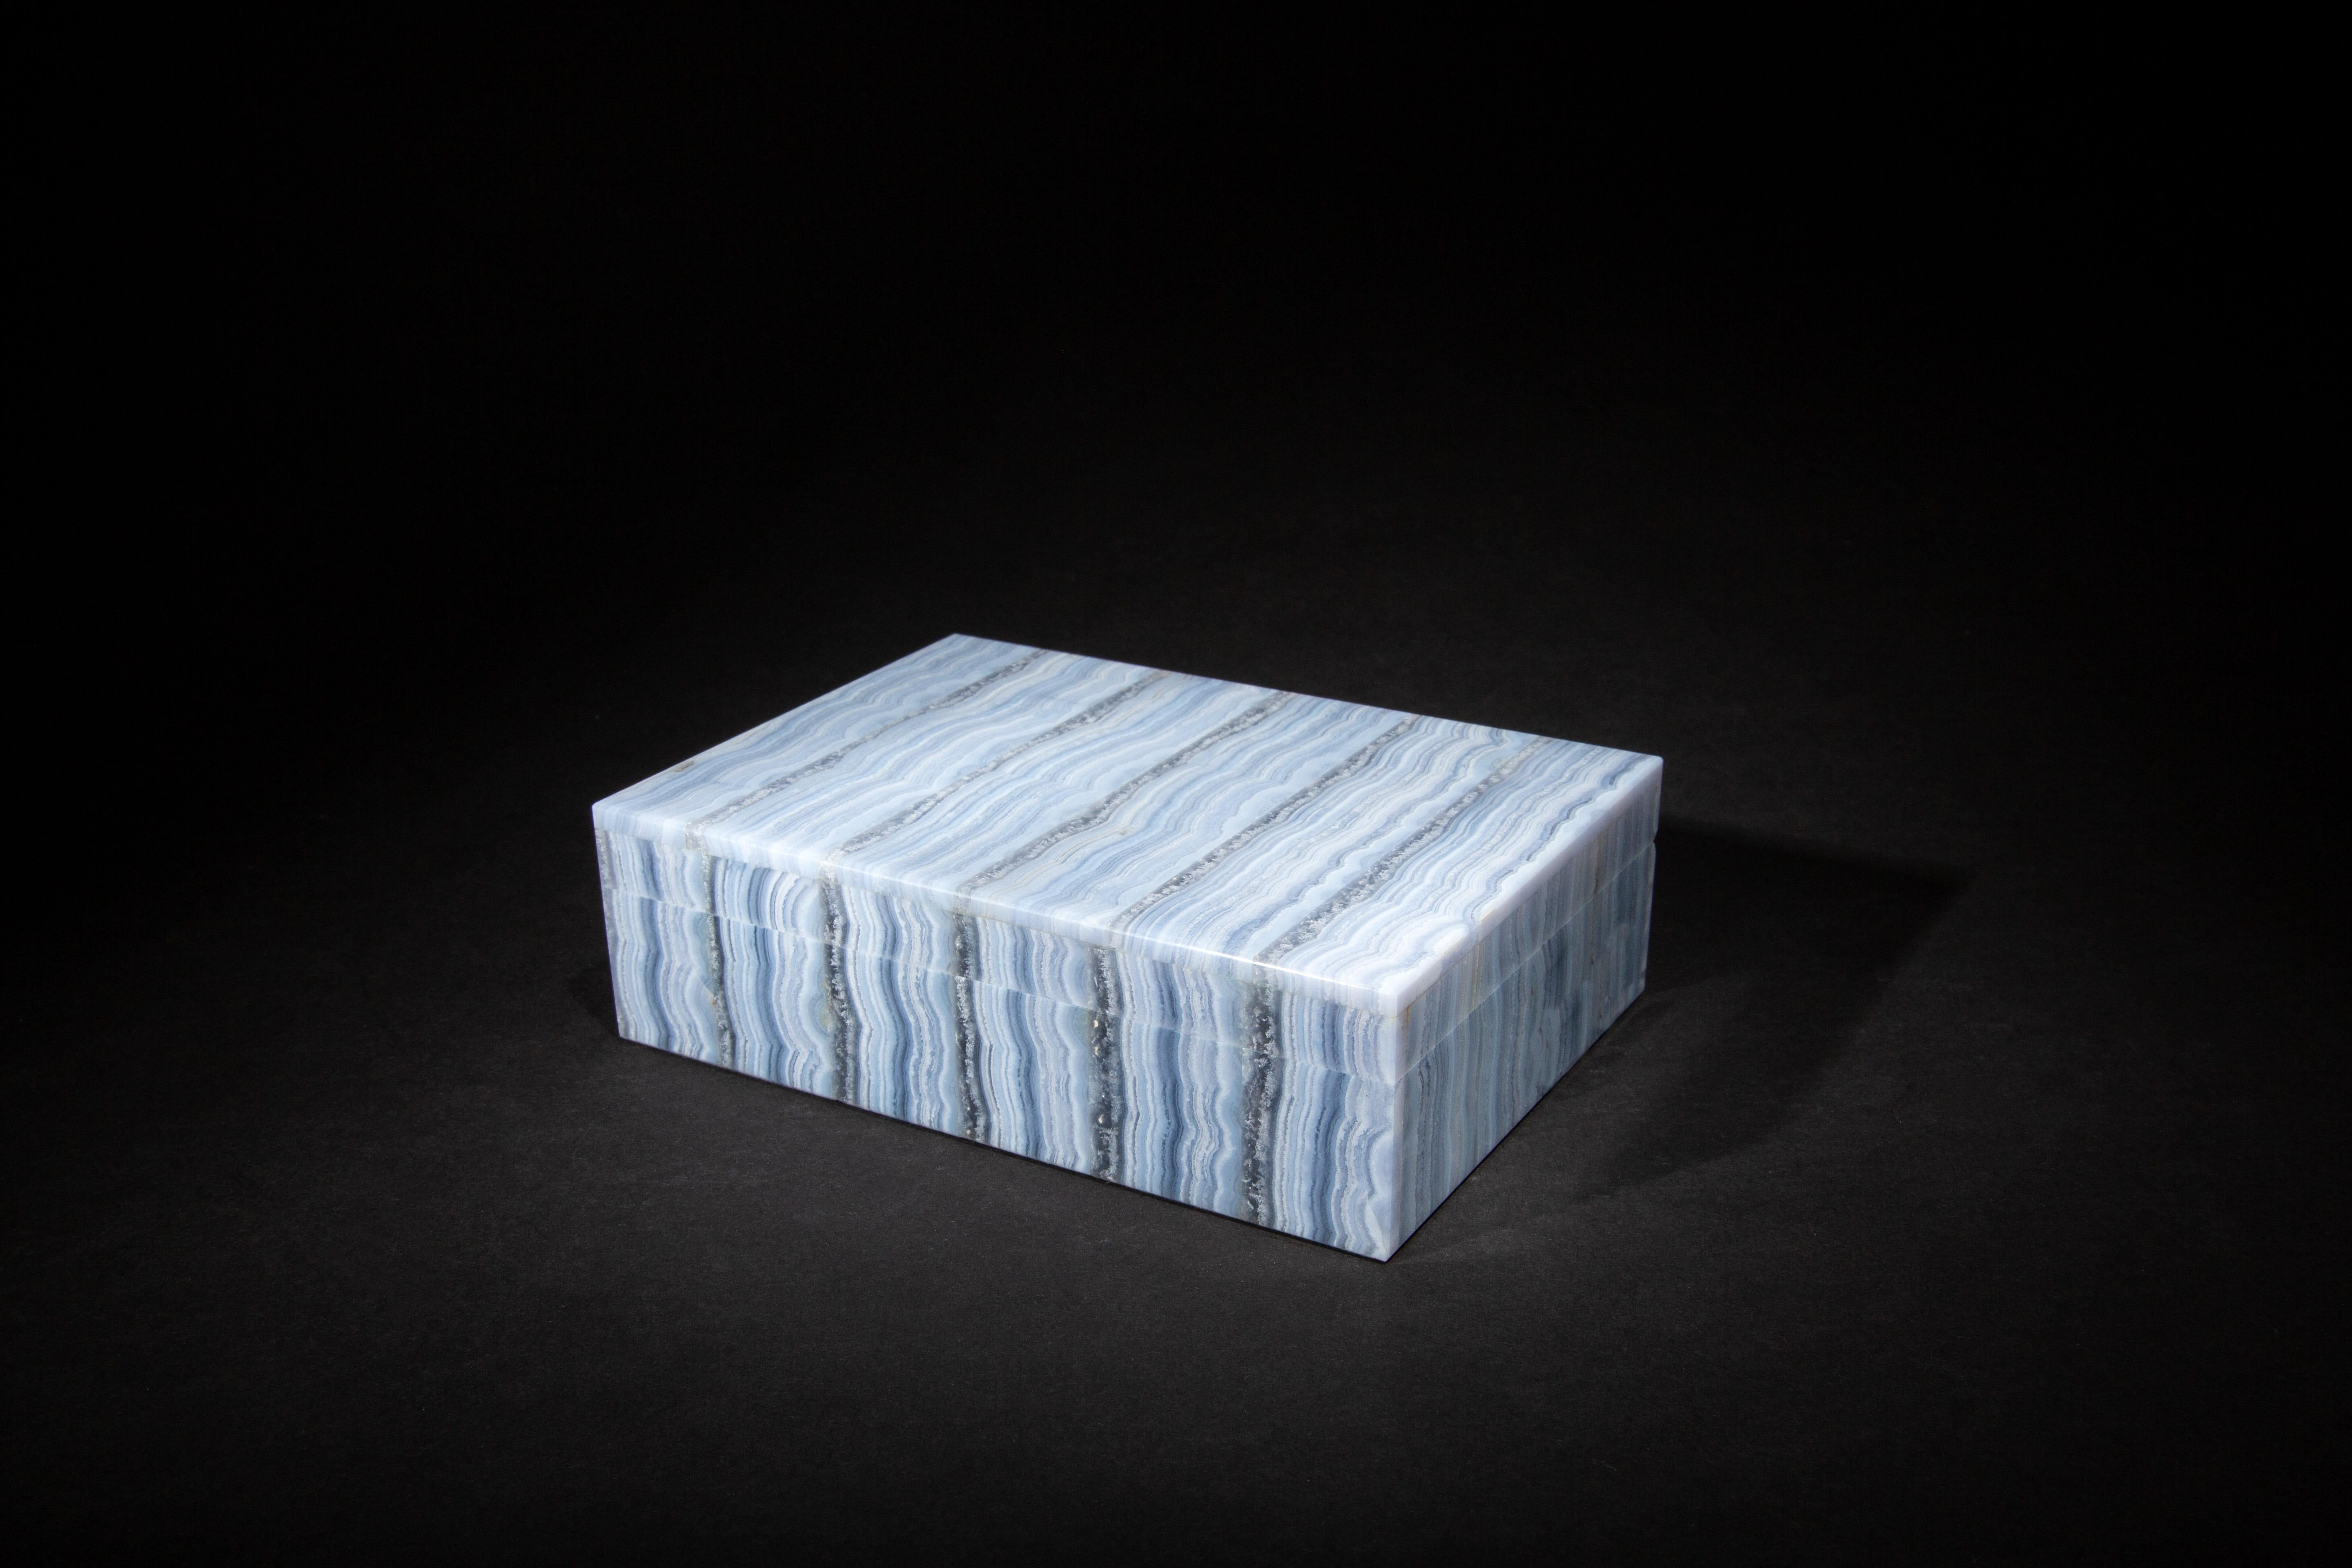 Blaue Spitze Achat Box:

Blue Lace Achat ist eine Varietät von Chalcedon, einer Art mikrokristallinem Quarz. Sie ist bekannt für ihre zarten blauen und weißen Streifen- oder Spitzenmuster, die ihr ein unverwechselbares und attraktives Aussehen